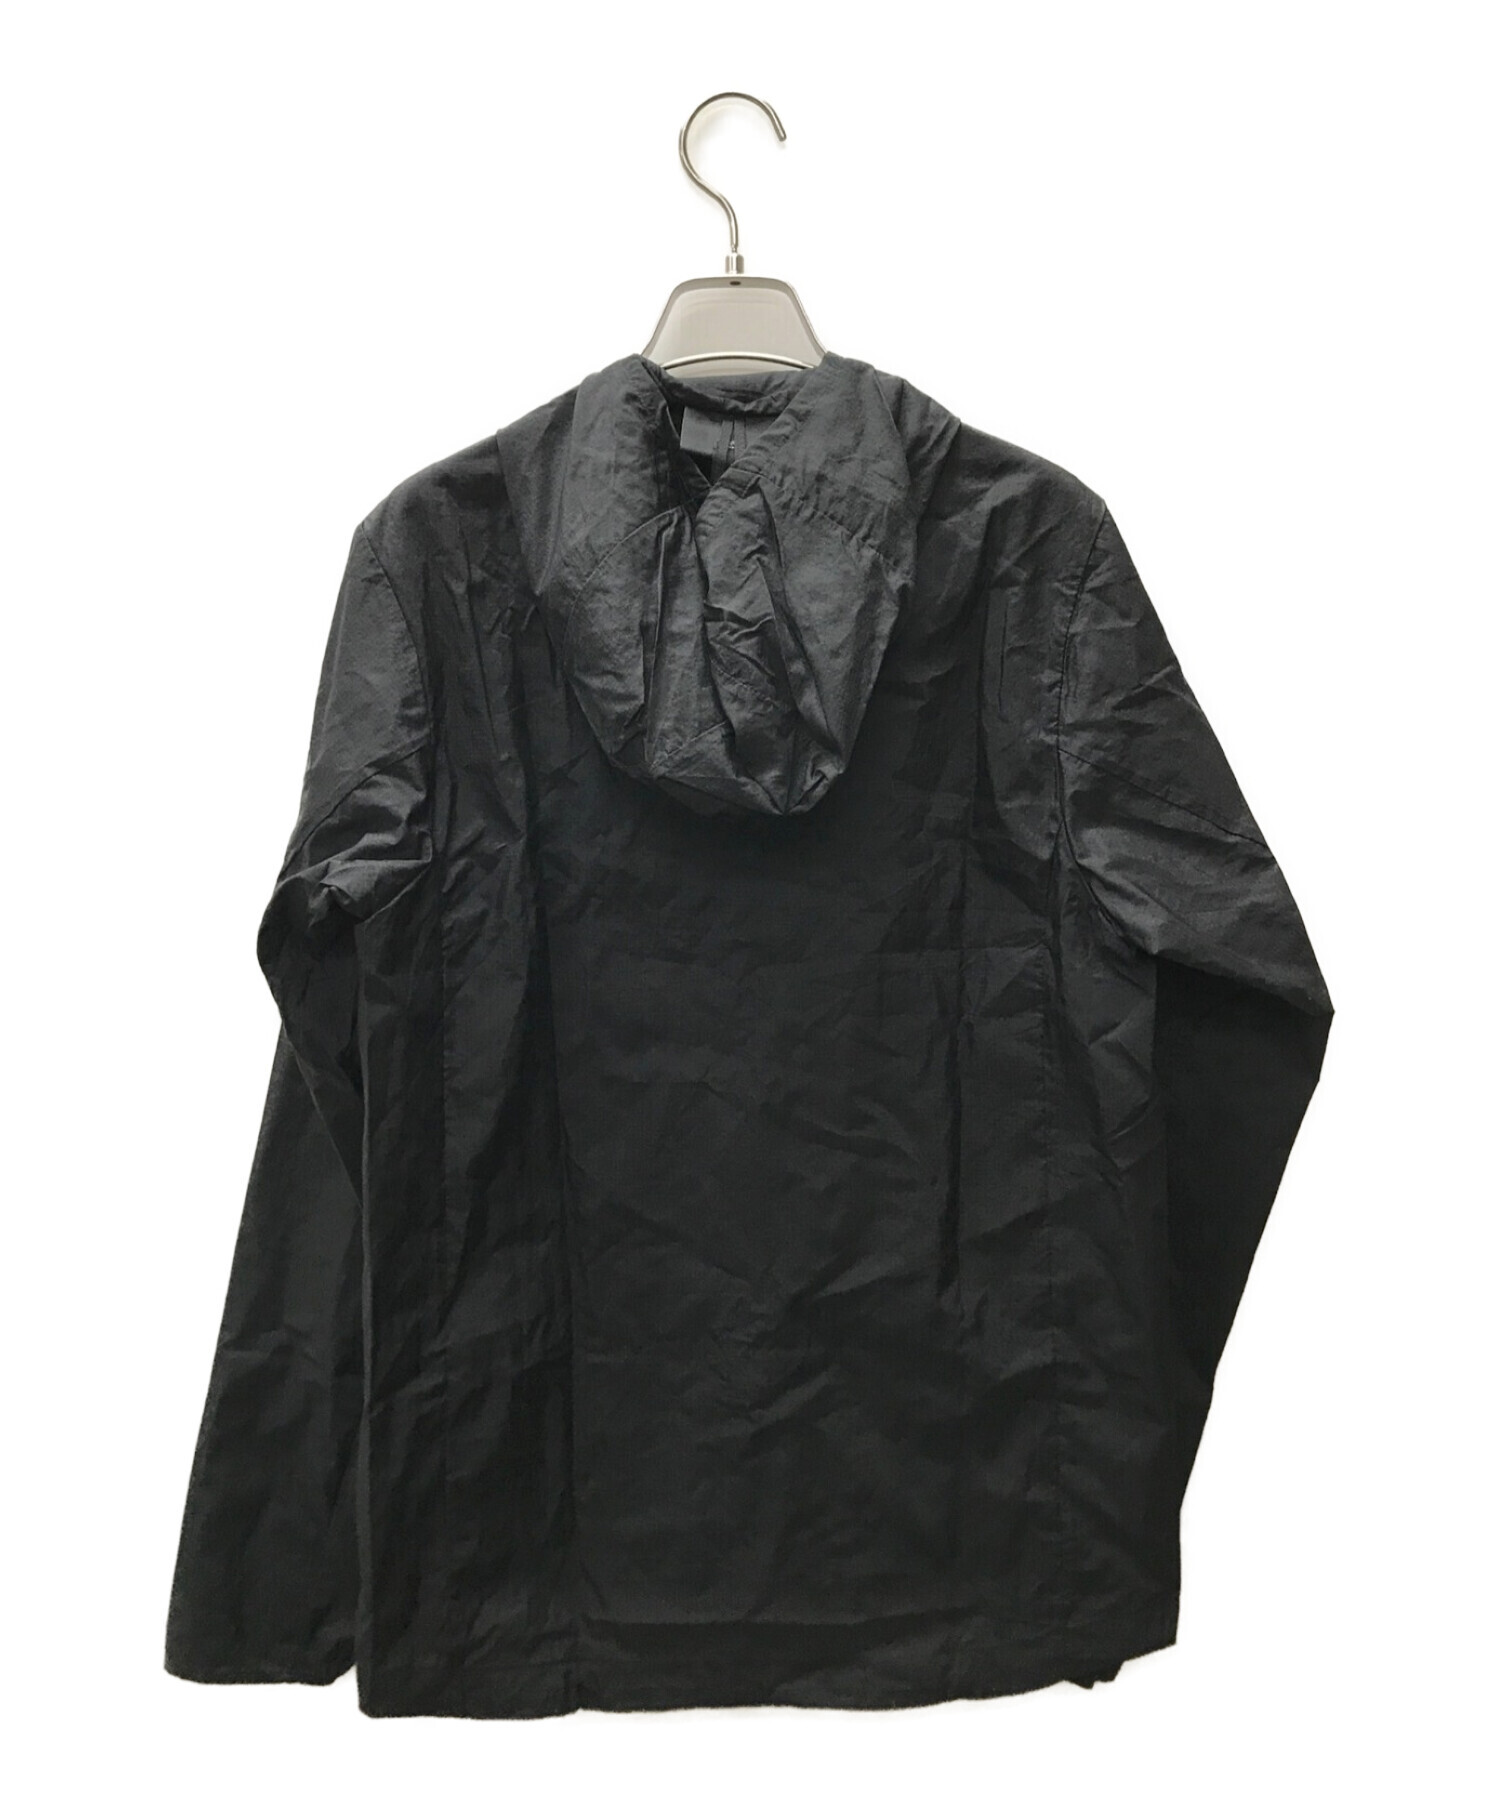 Patagonia (パタゴニア) フーディニジャケット ブラック サイズ:XS